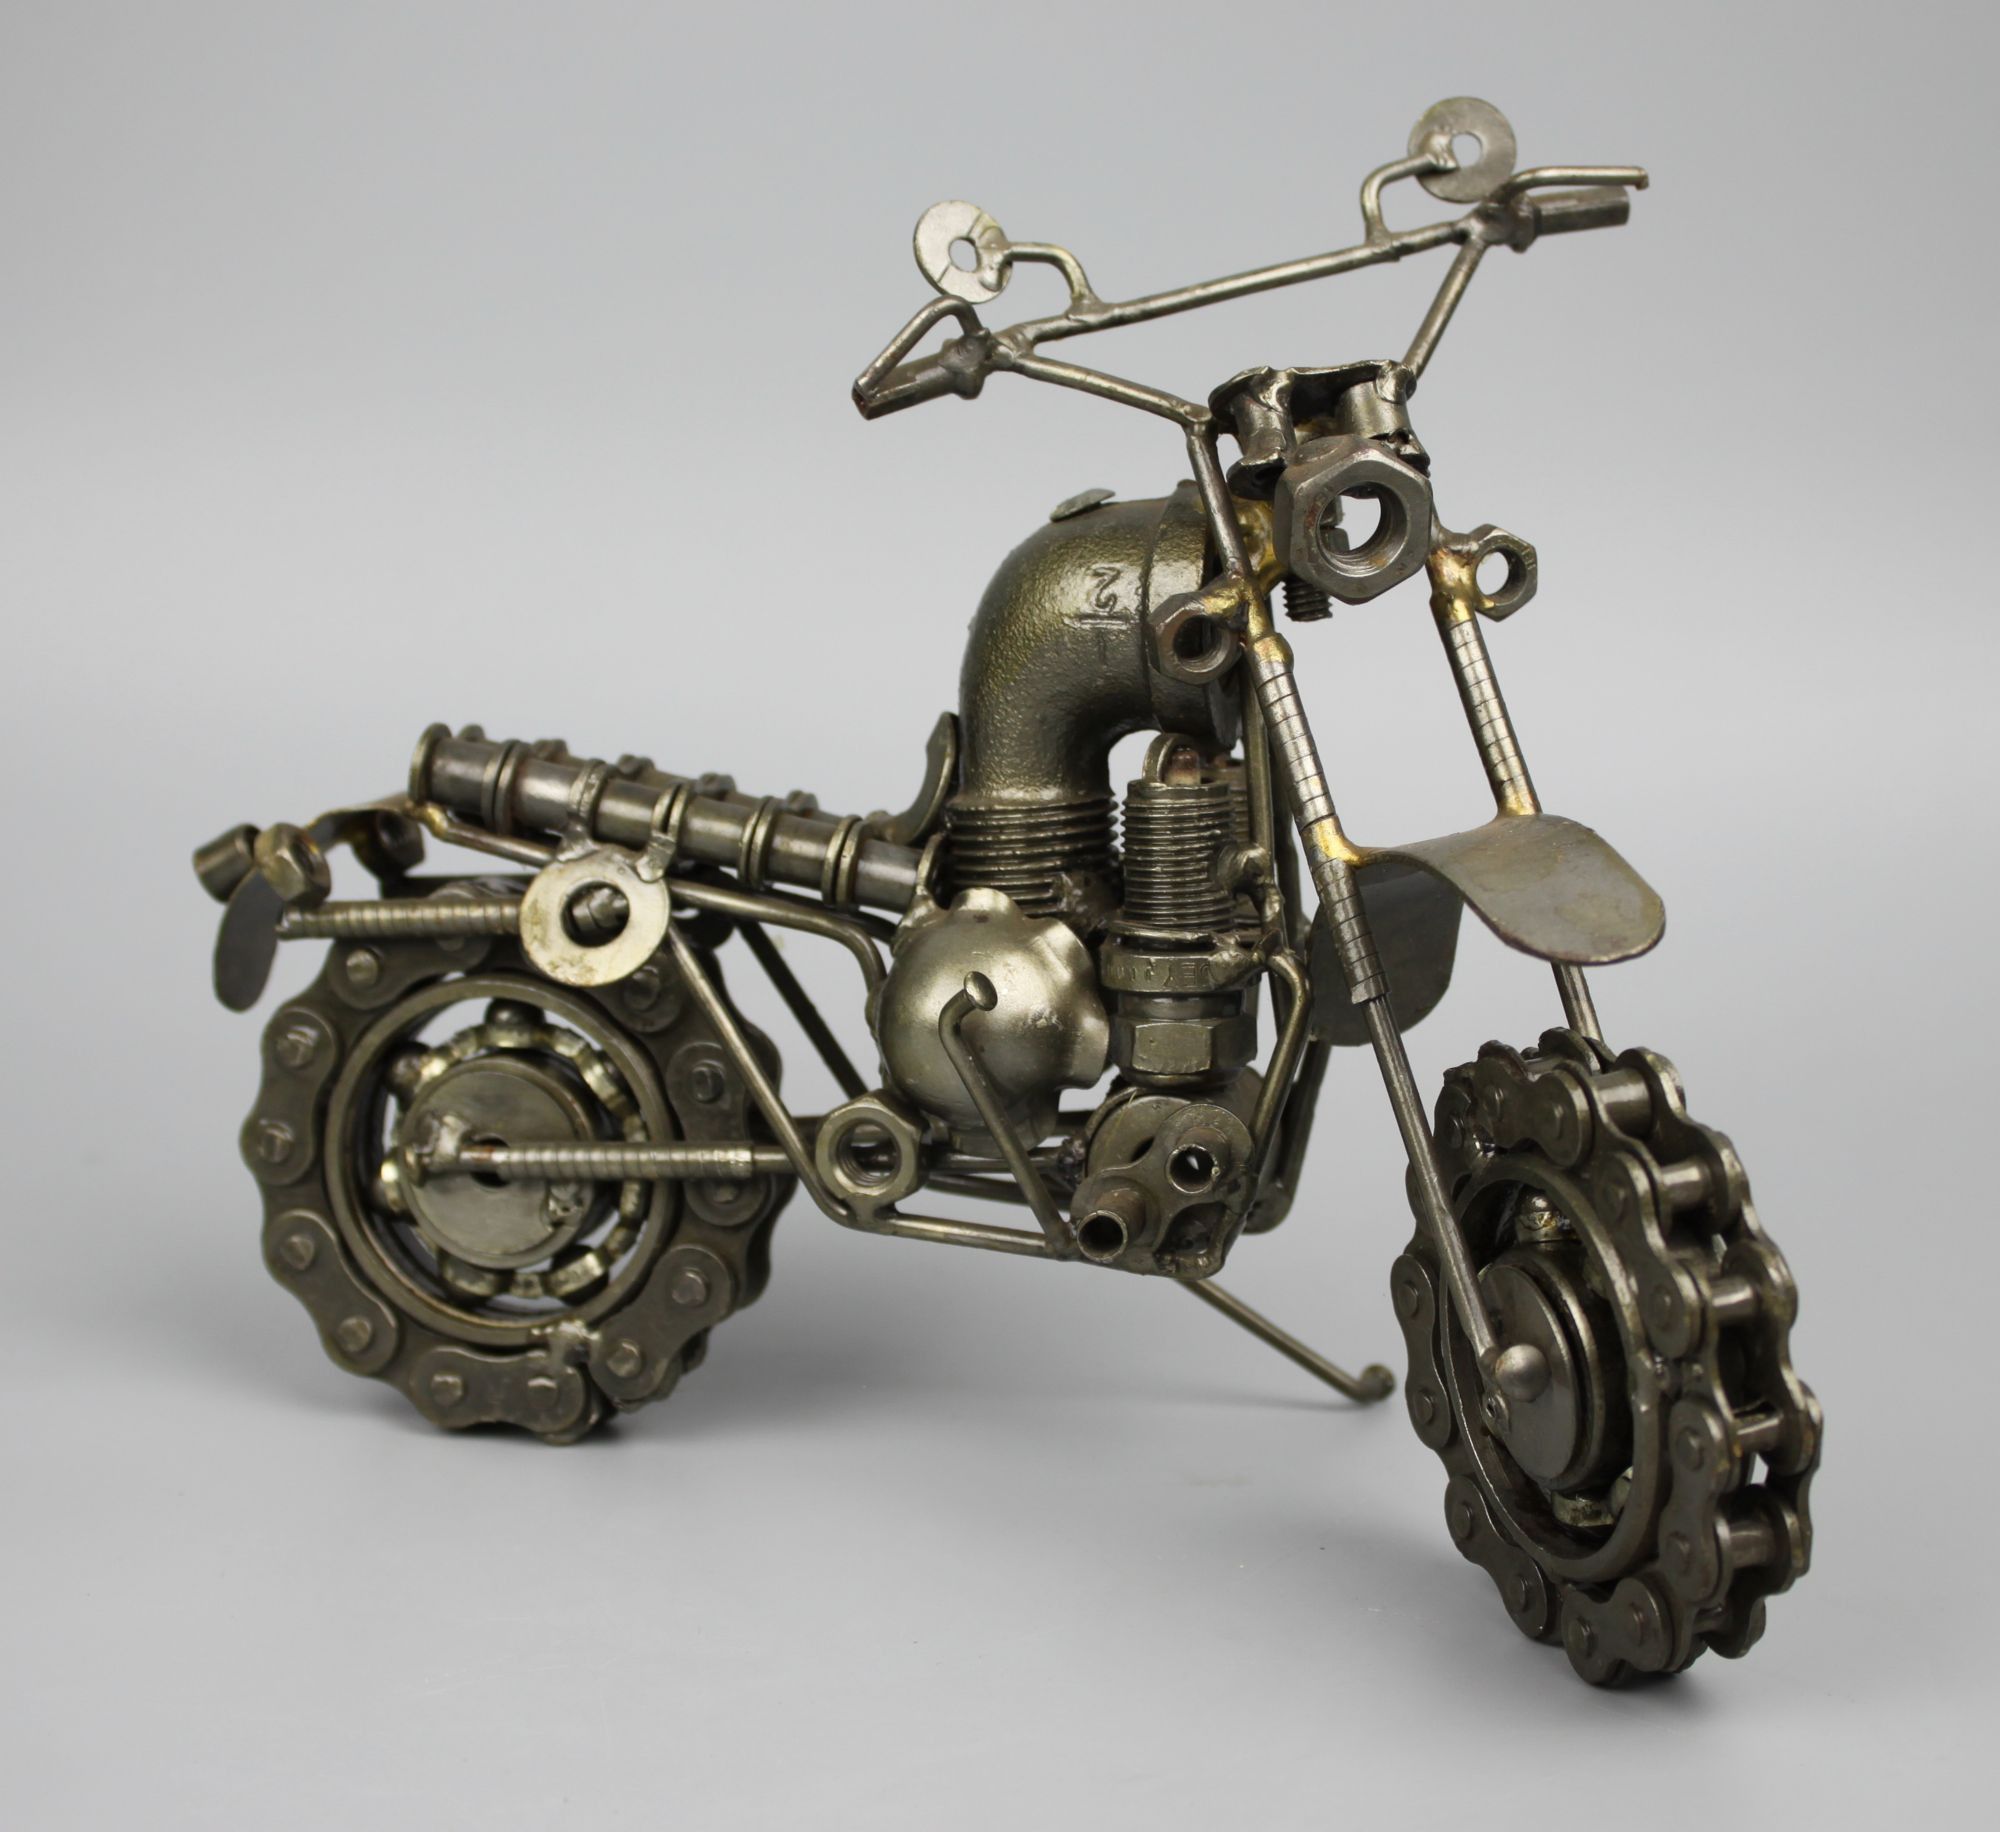 Motorcycle Scrap Metal Sculpture